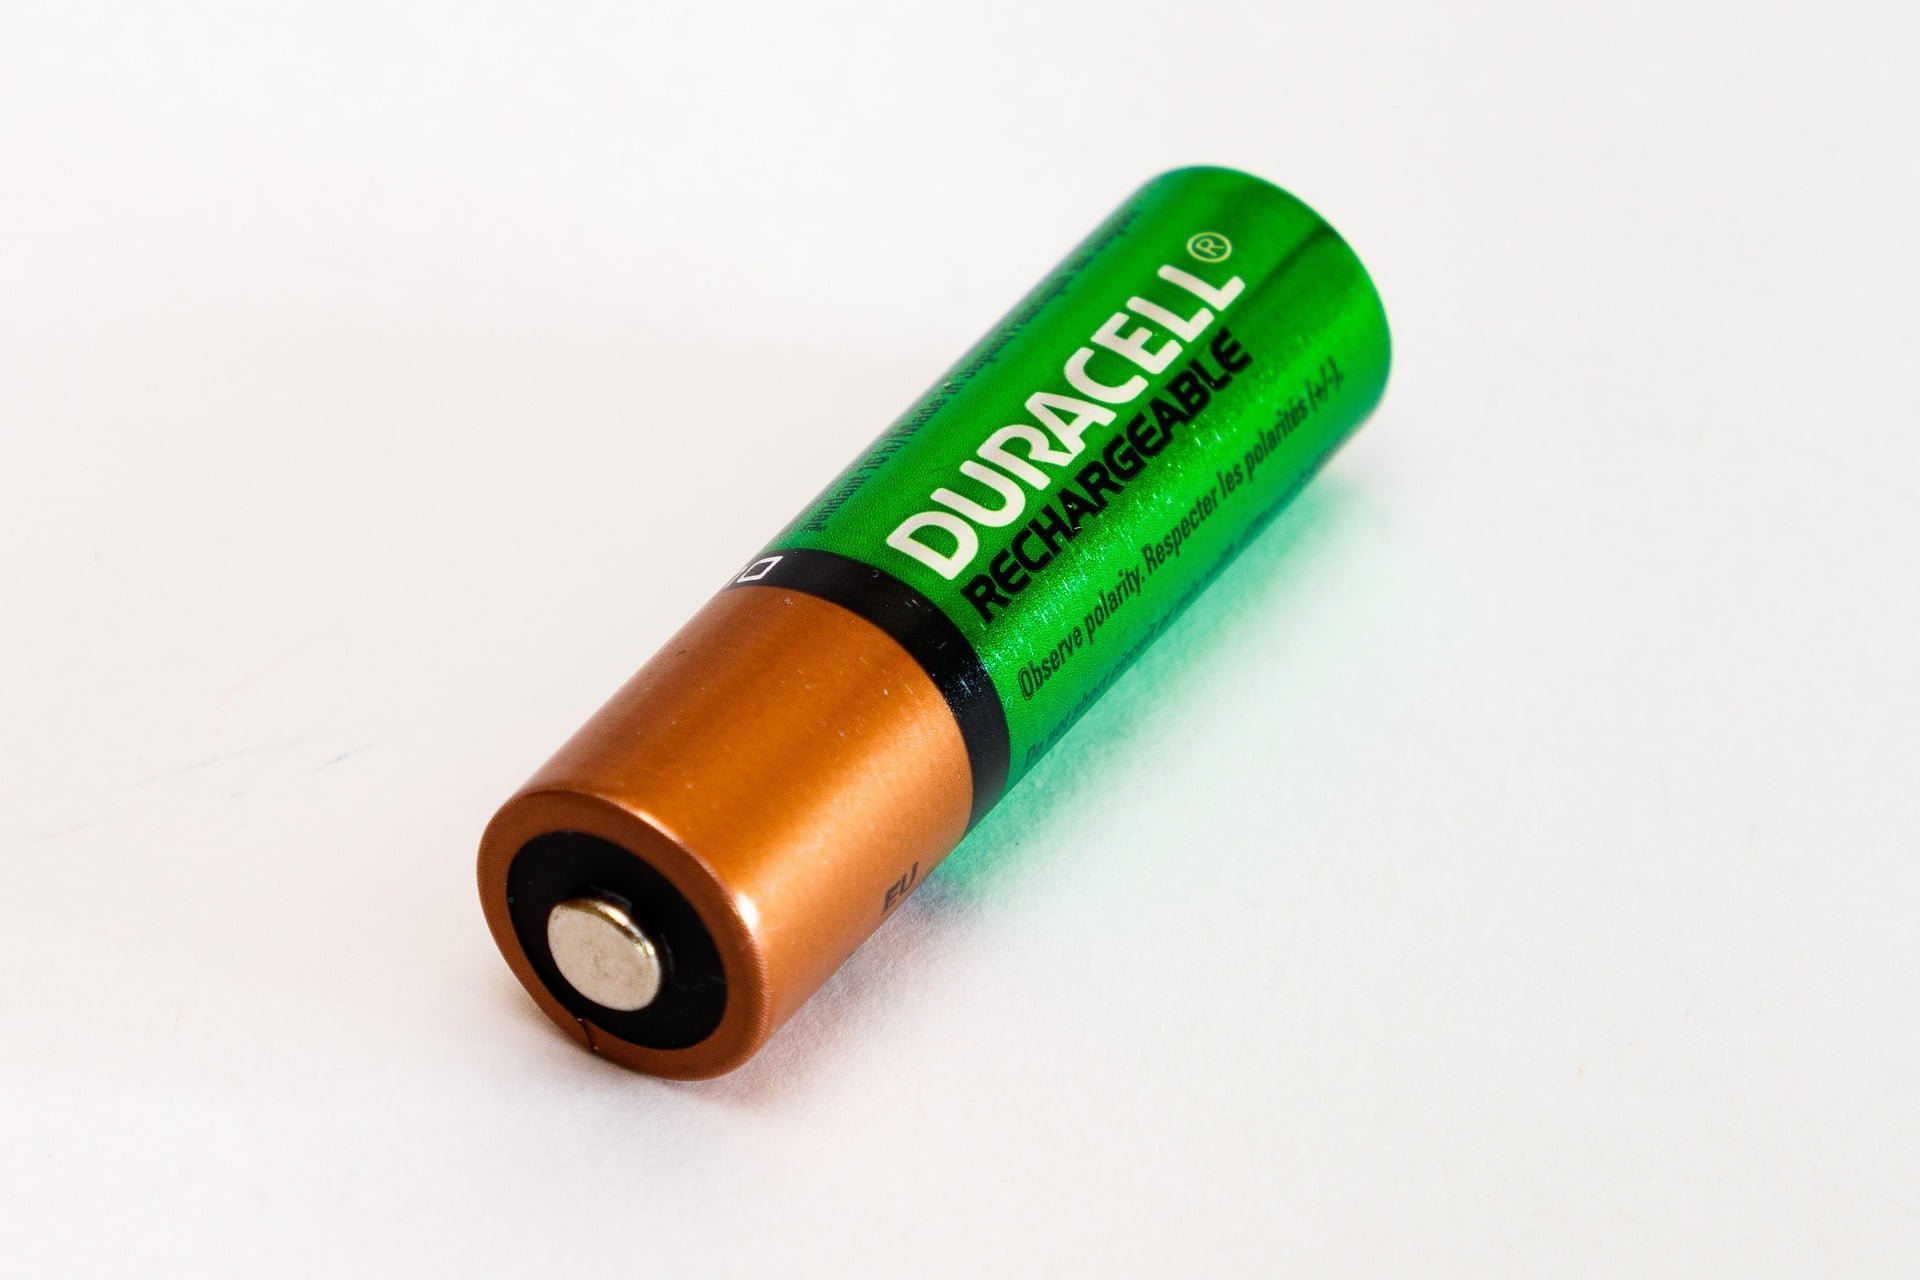 det betale sig at bruge genopladelige batterier? -